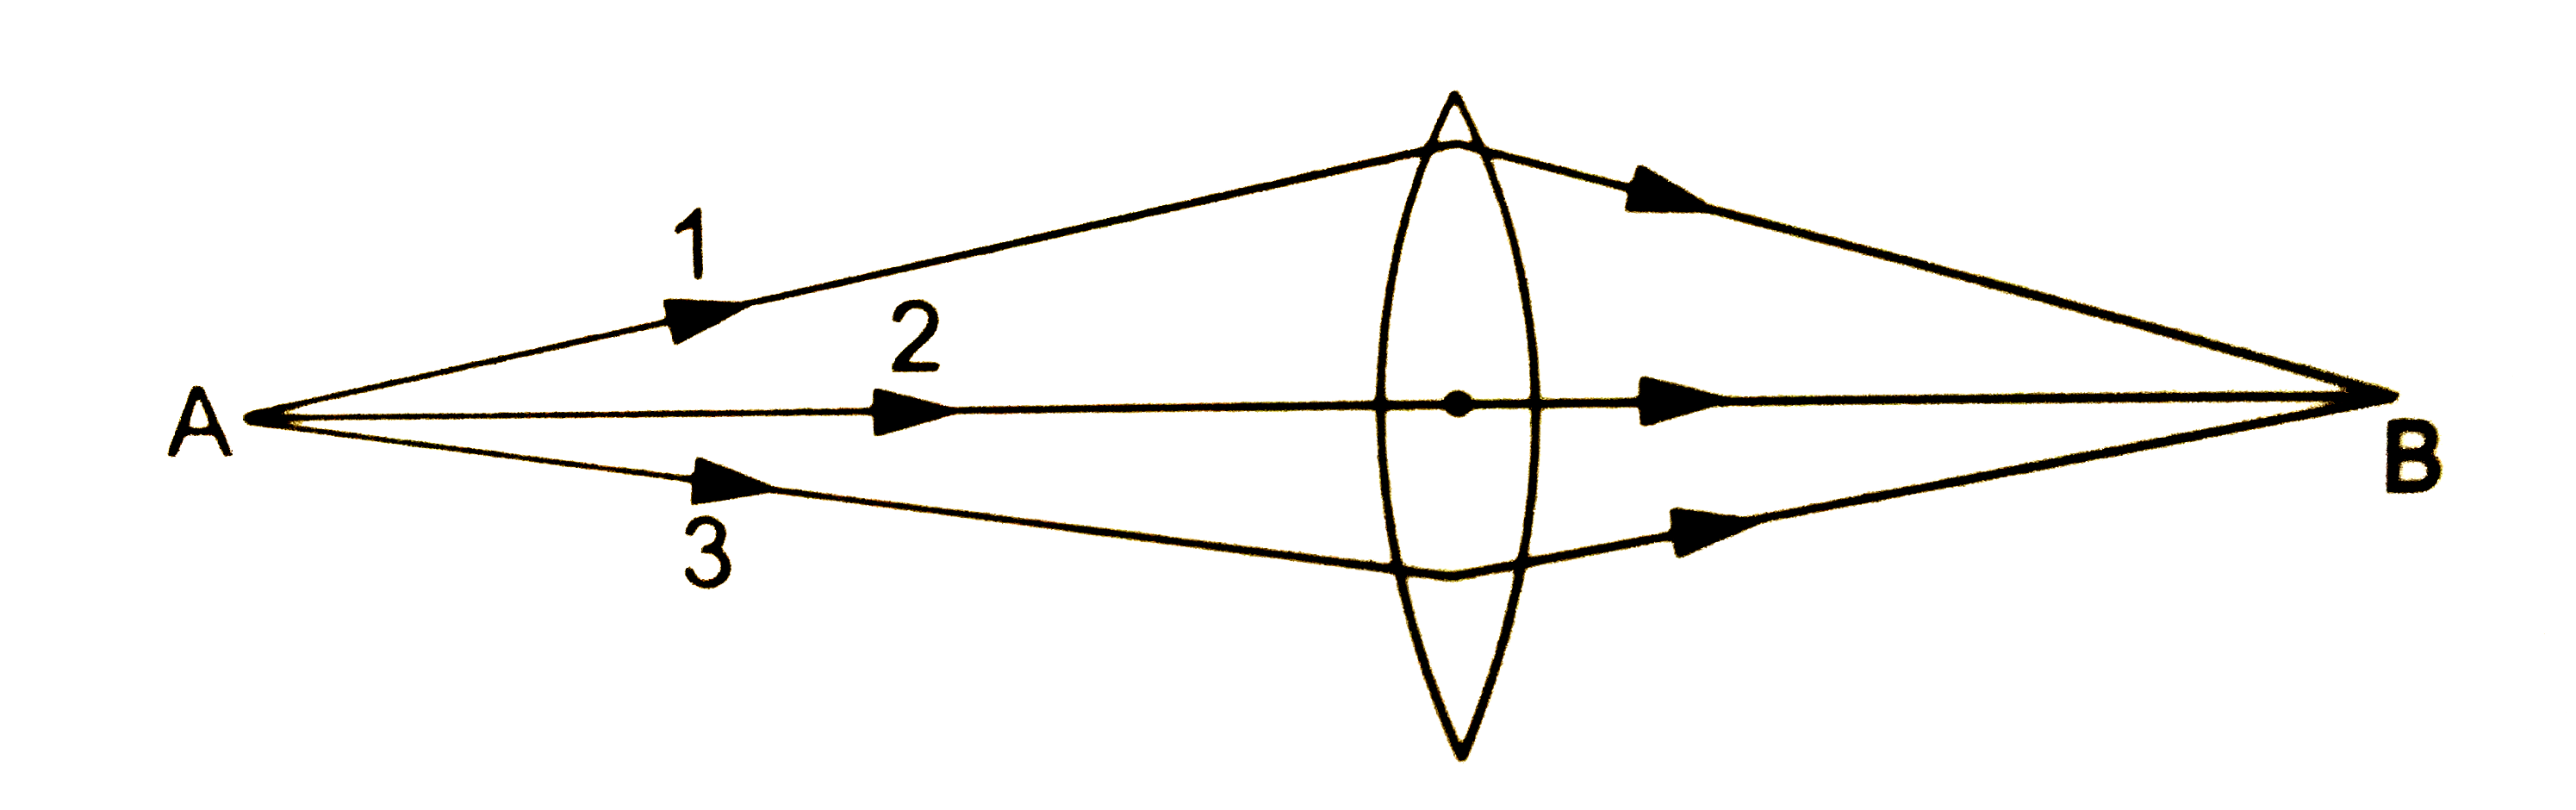 एक बिन्दुस्त्रोत A से चला प्रकाश एक उत्तल लेंस से गुजरकर बिंदु B पर उसका प्रतिबिम्ब बनाता है चित्र (32.2) | A से चलने वाली तीन किरणे चित्र में दिखाई गई है तीनो में से कौन - सी किरण का प्रकाशीय पथ सबसे लंबा है ?